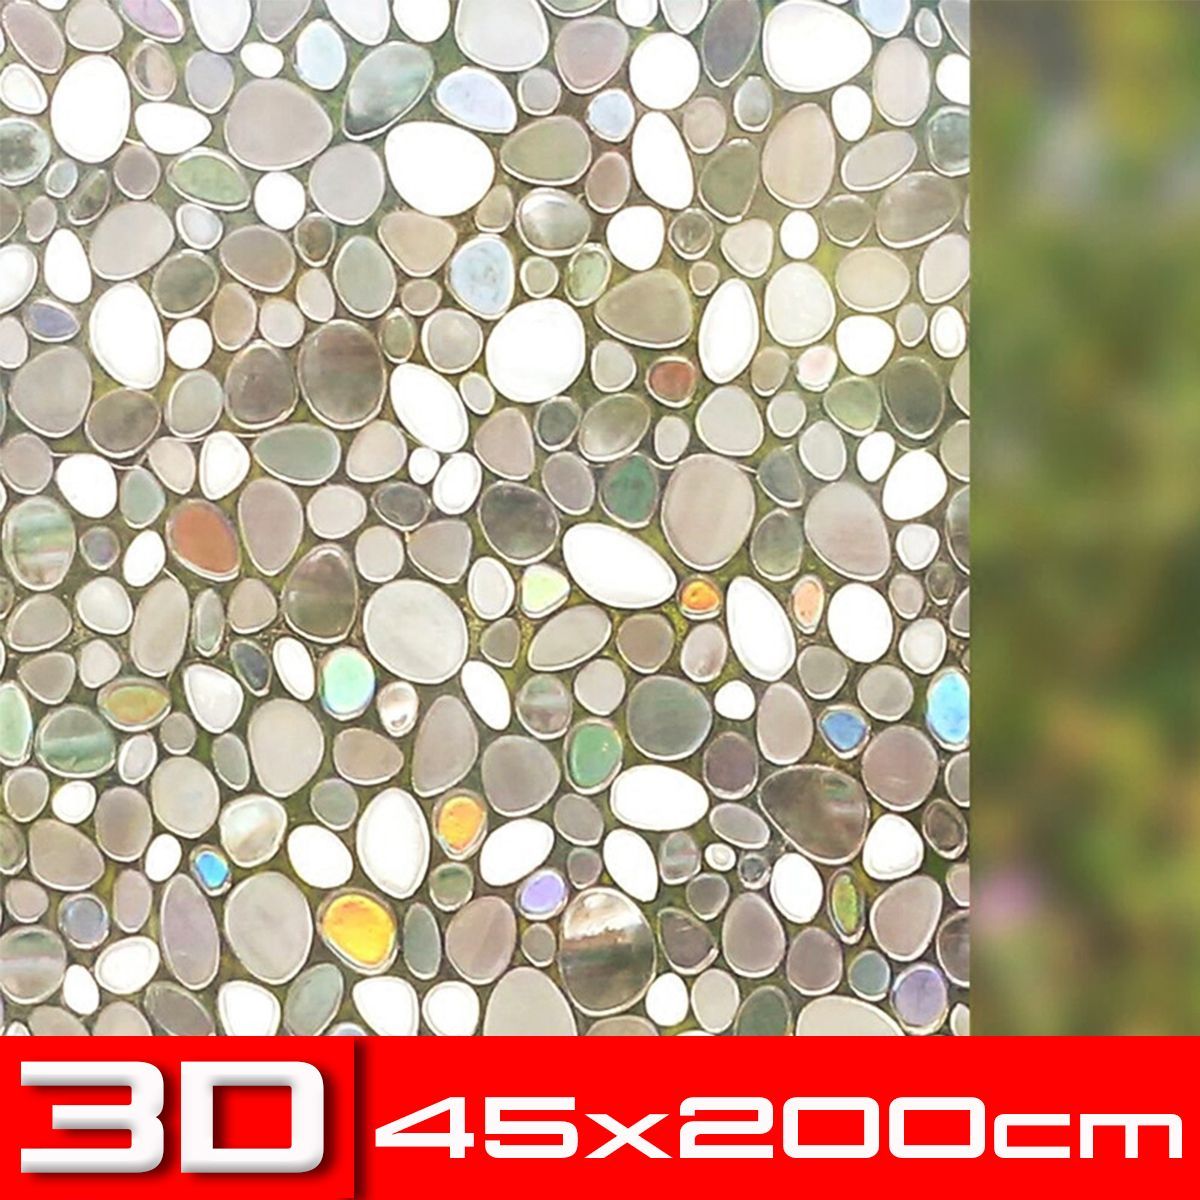 3D-Cobblestones-Static-Decorative-Window-Film-Privacy-Non-Adhesive-45x200cm-1630534